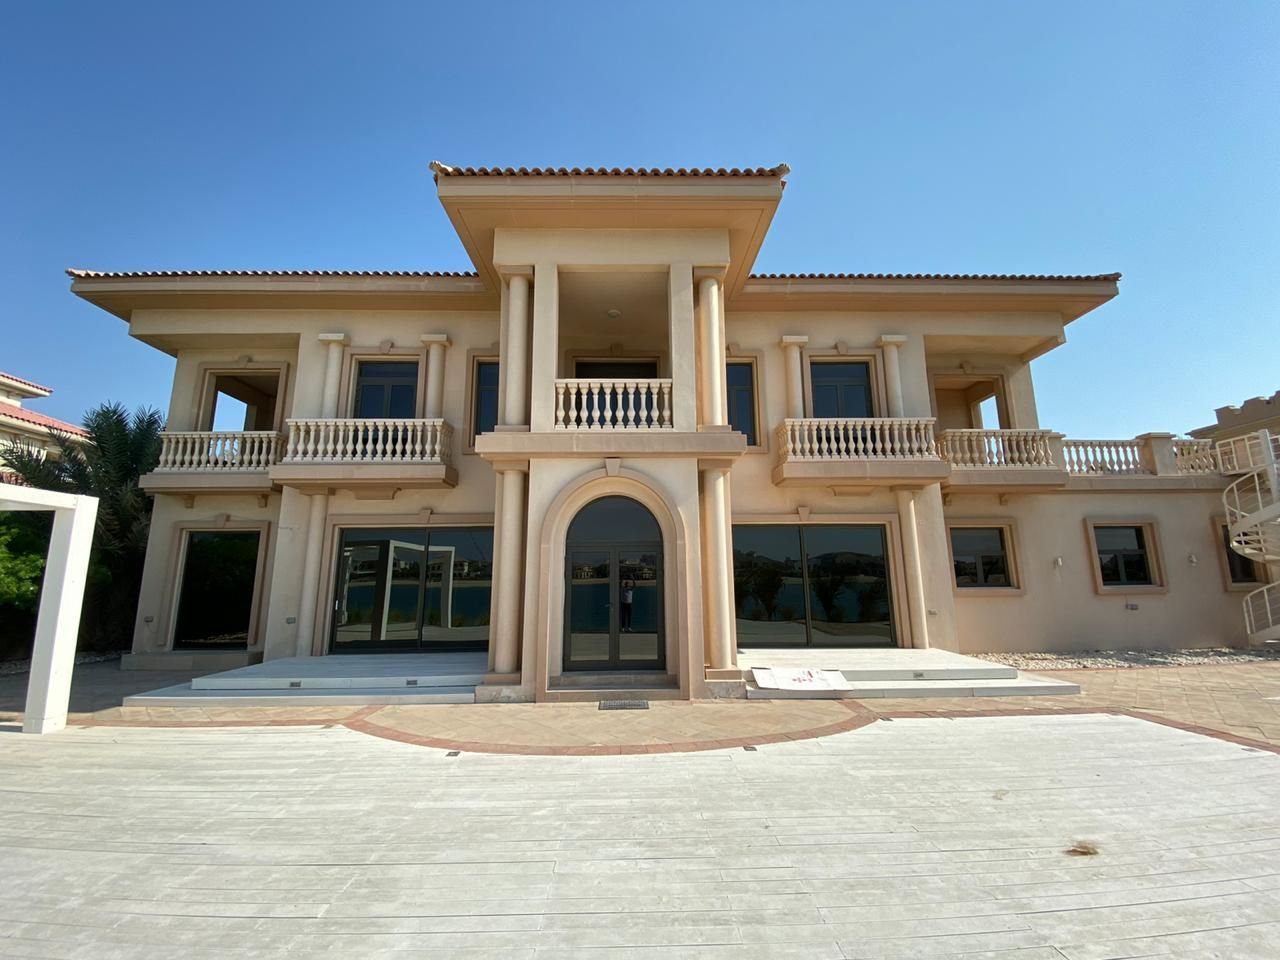 Villa in Dubai, UAE, 2 846 sq.m - picture 1